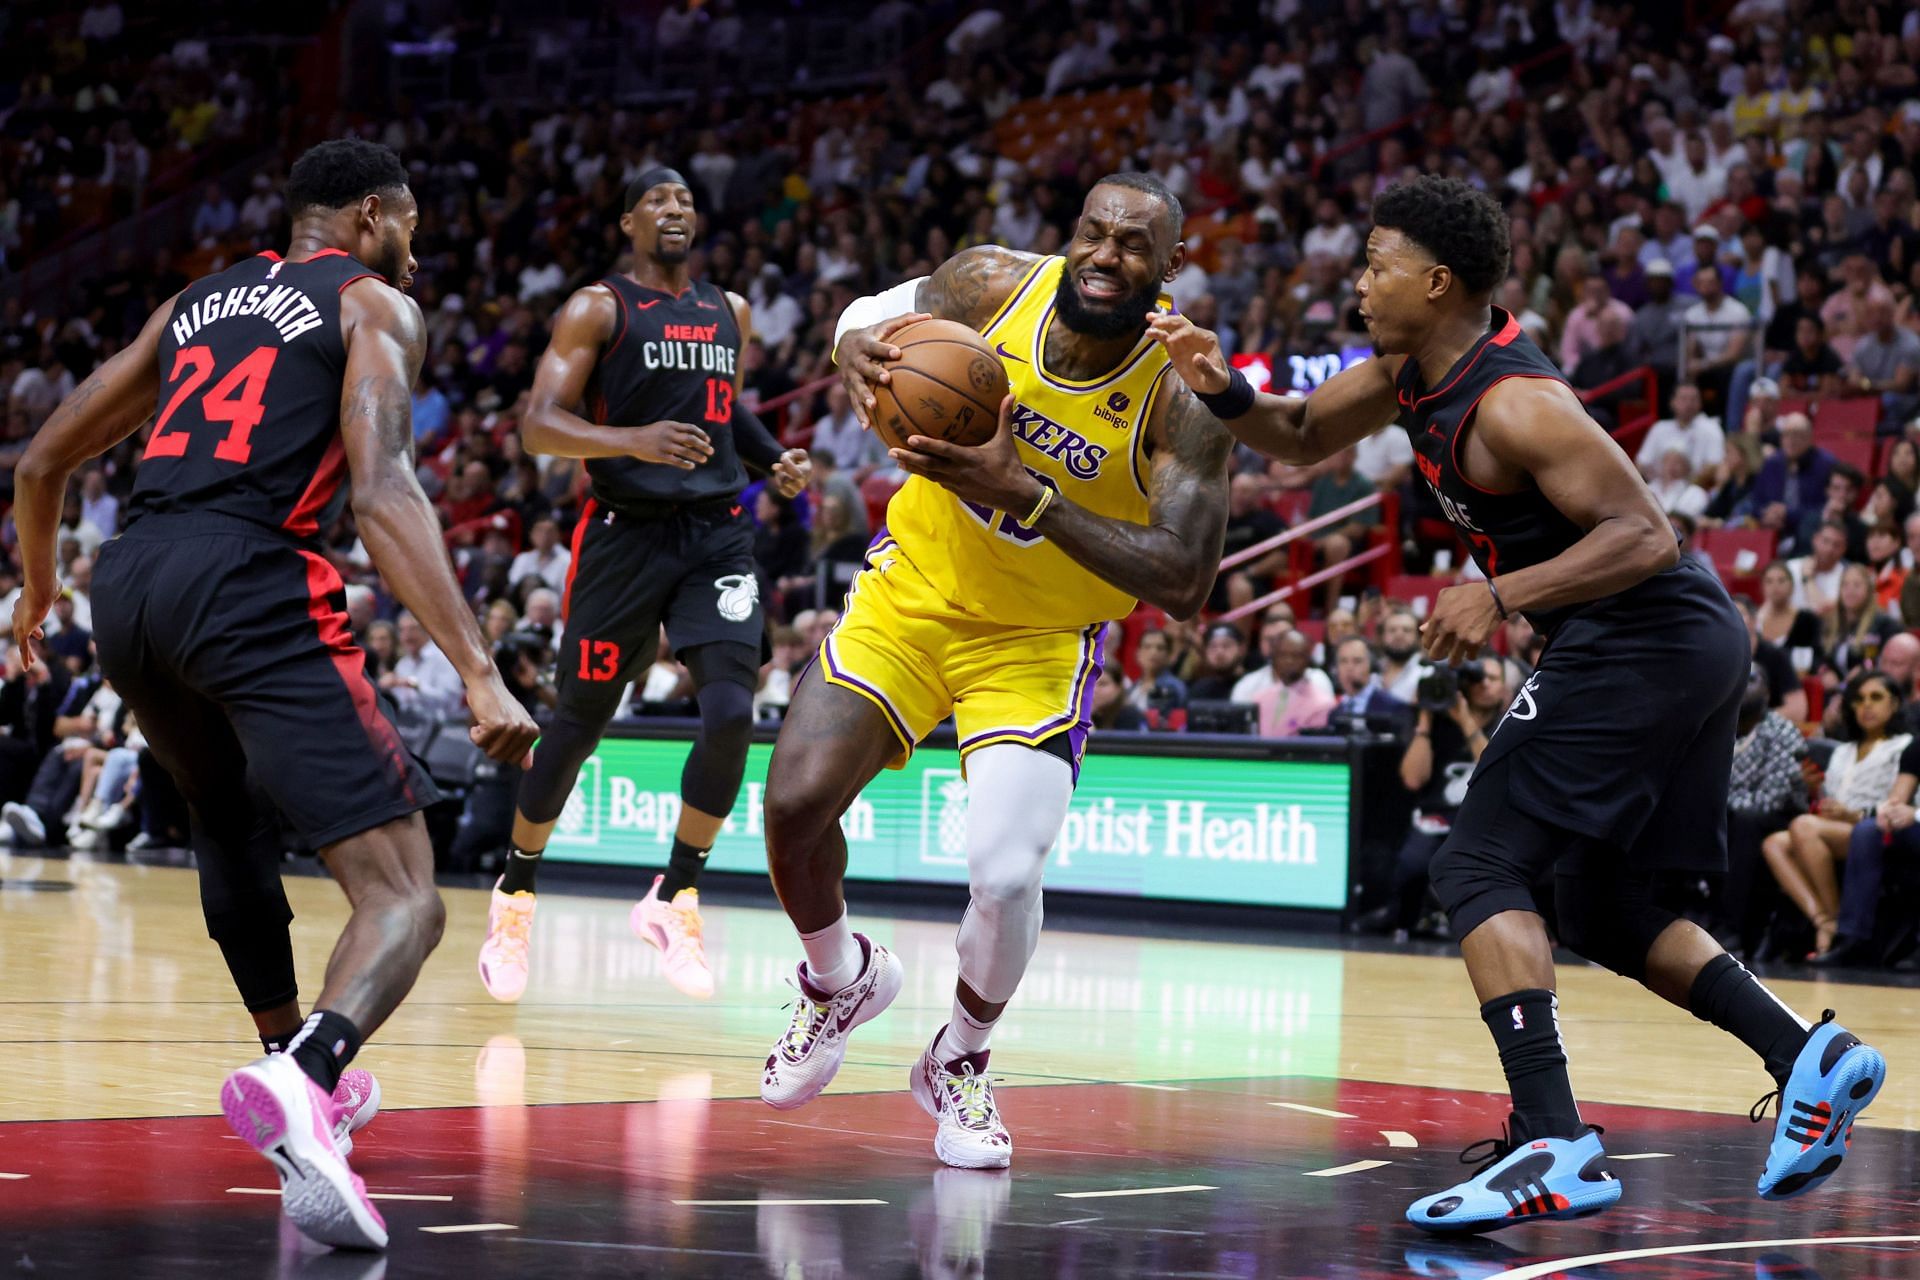 Los Angeles Lakers v Miami Heat